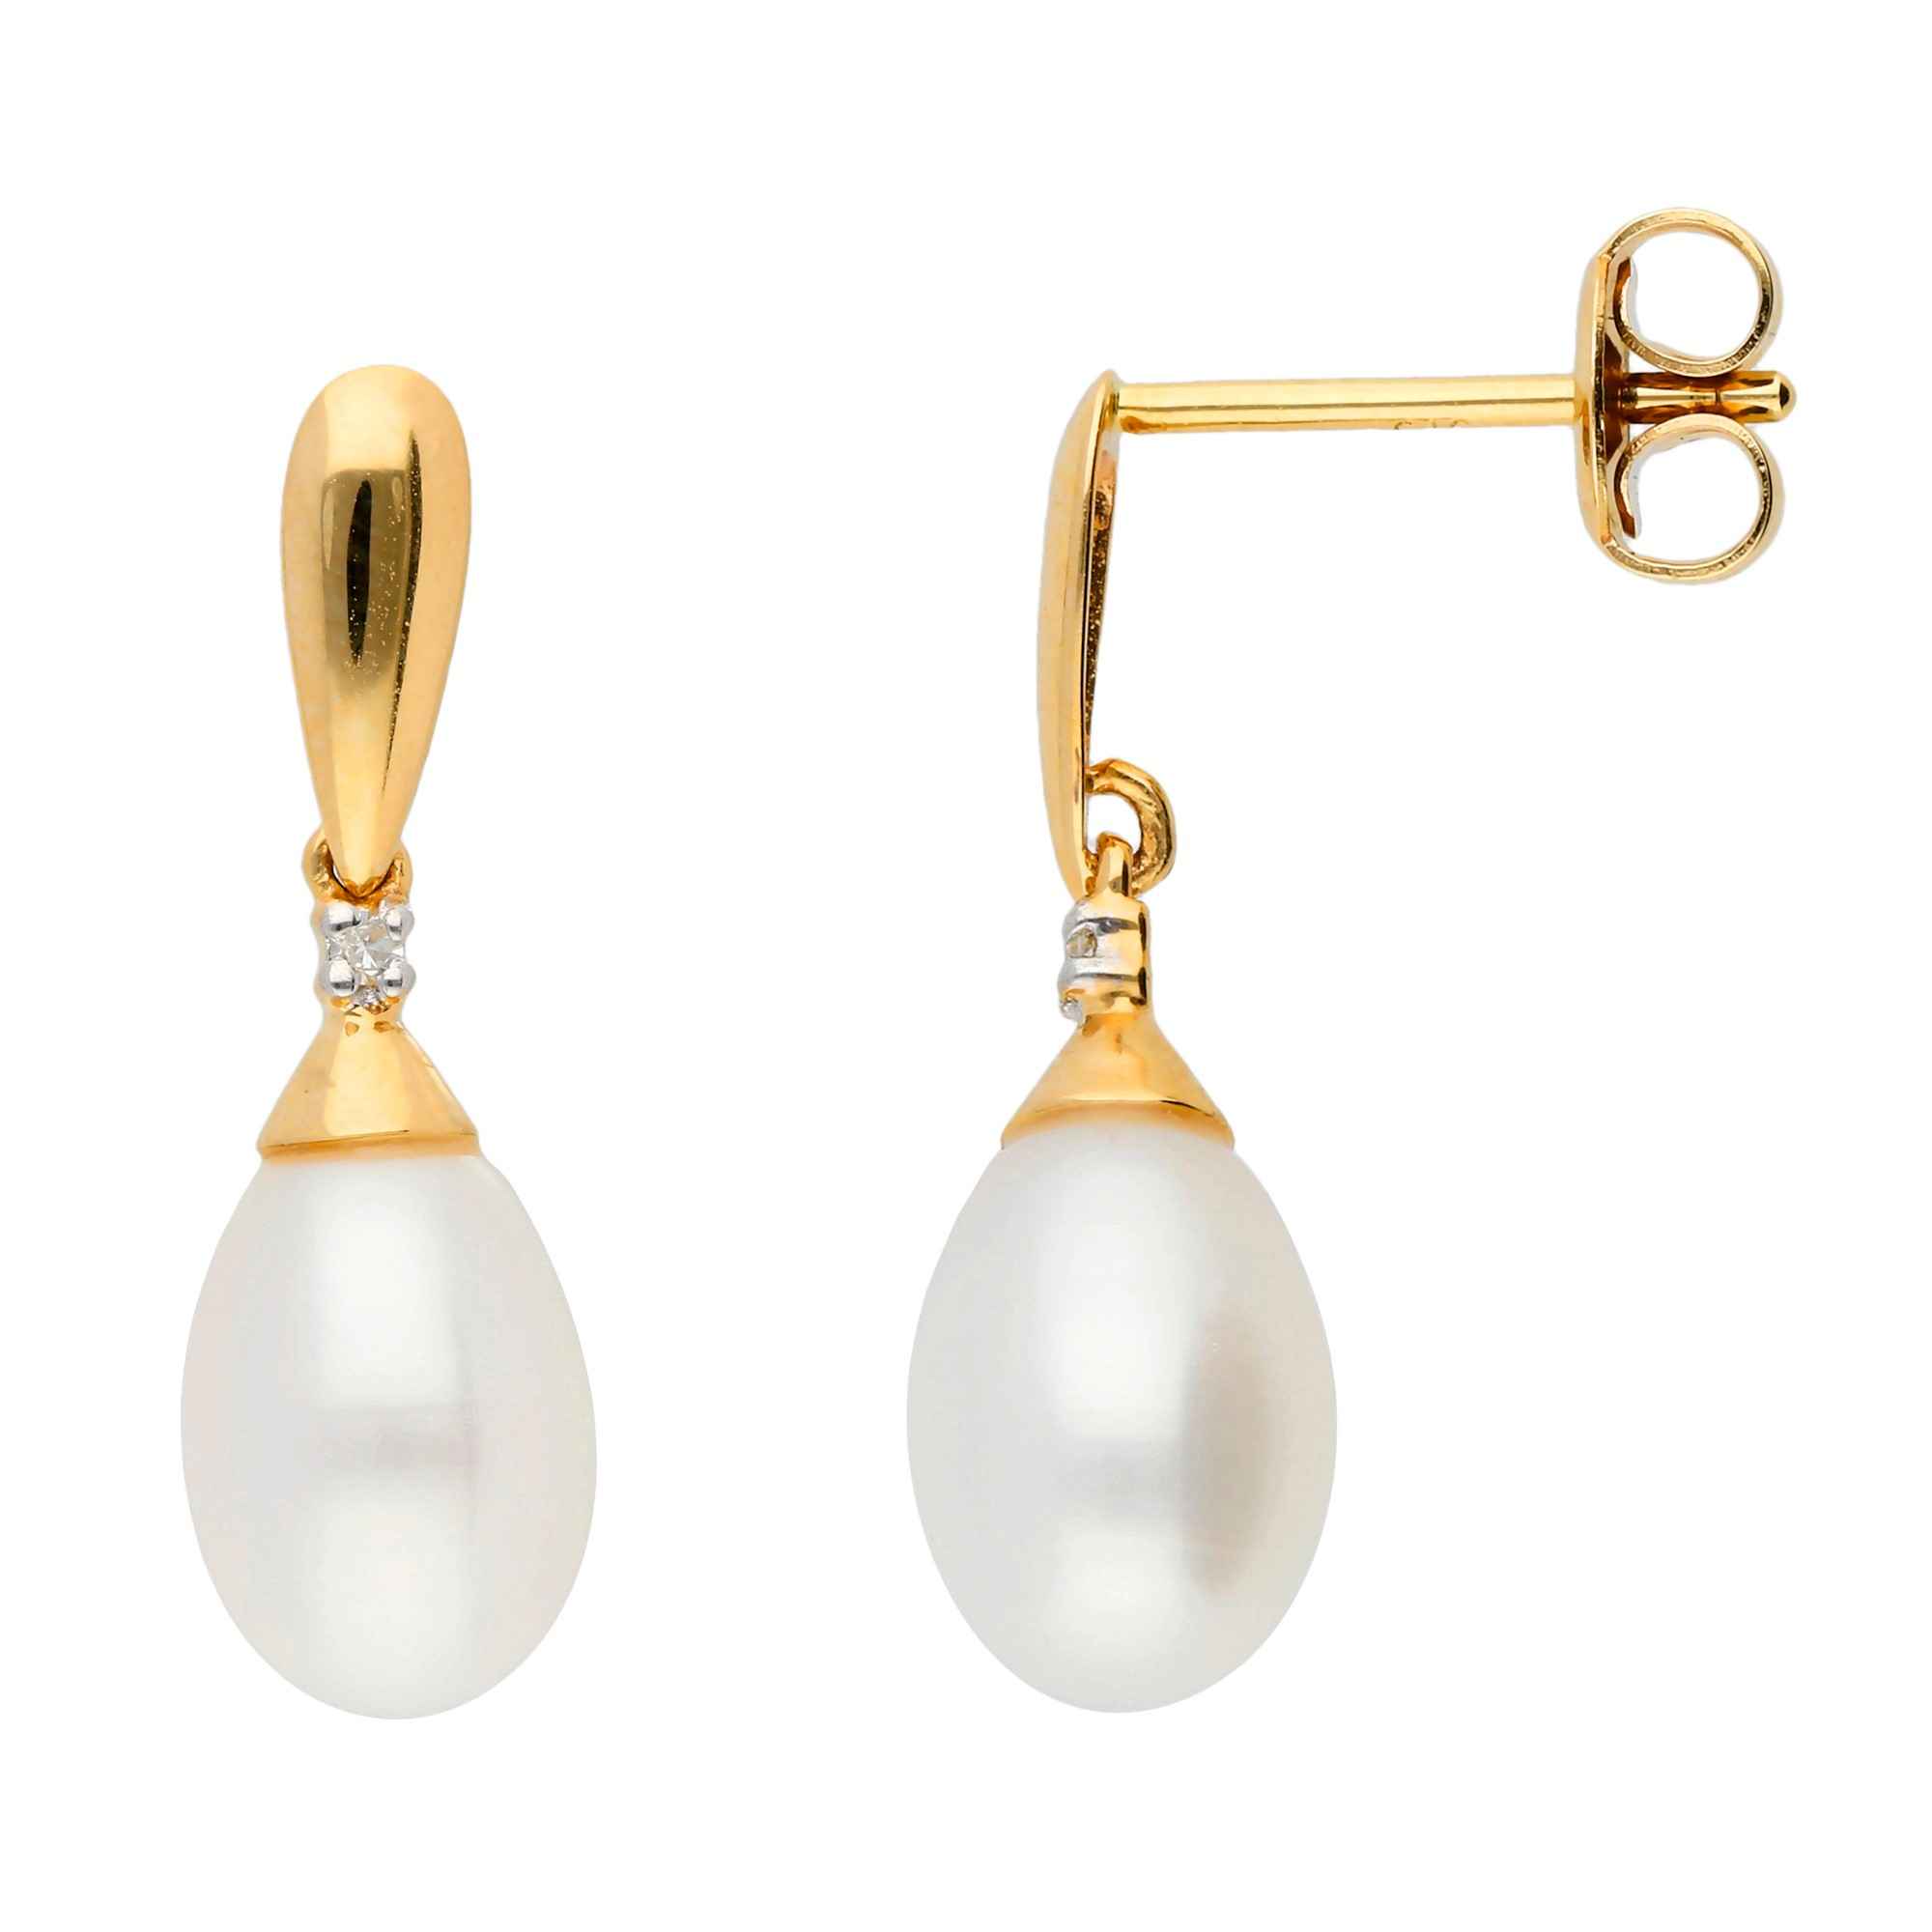 Chain Pearl Earrings Pearl Dangle Drop Earrings Gold Pearl - Etsy | Pearl  earrings wedding, Long bridal earrings, Bridesmaid pearls